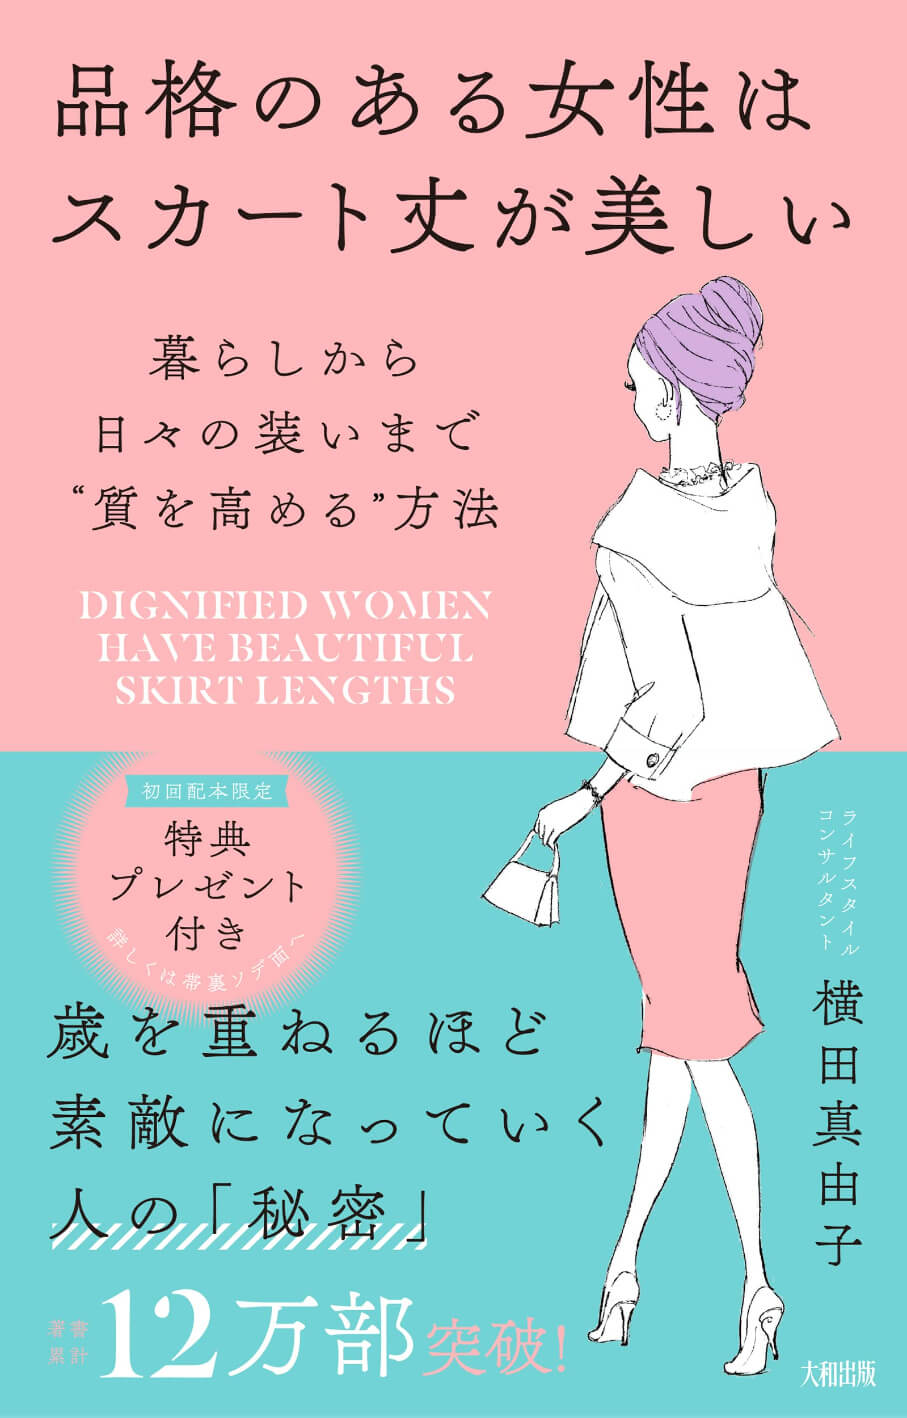 横田真由子の書籍「品格のある女性はスカート丈が美しい 暮らしから日々の装いまで“質を高める”方法」